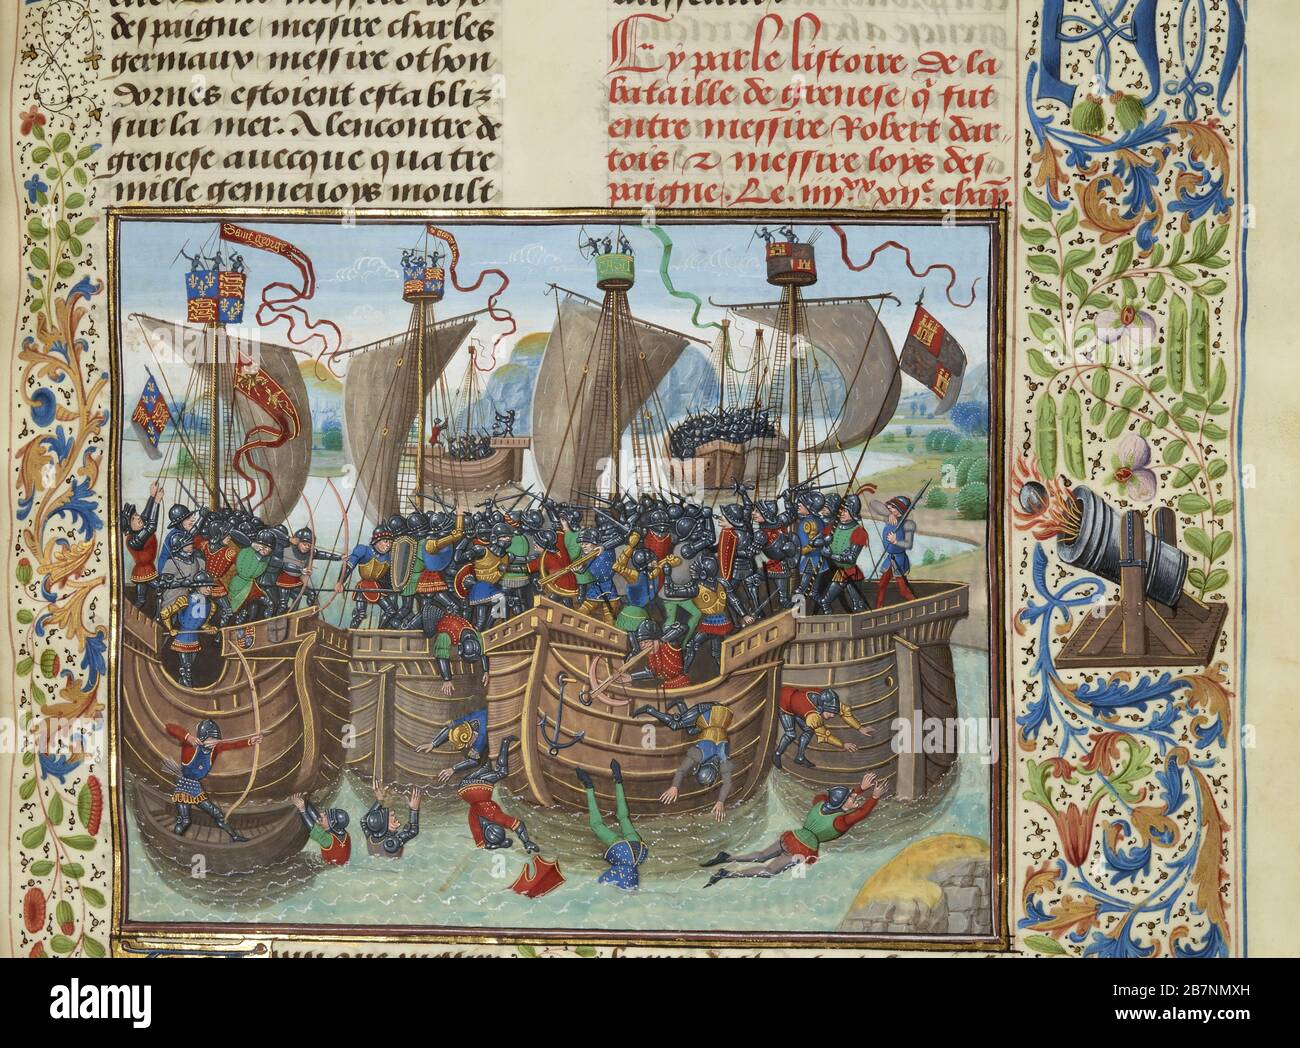 La battaglia navale di Guernsey, 1342 (miniatura delle Grandes Chroniques de France di Jean Froissart), ca 1470-1475. Trovato nella Collezione di Biblioth&.xe8;que Nationale de France. Foto Stock